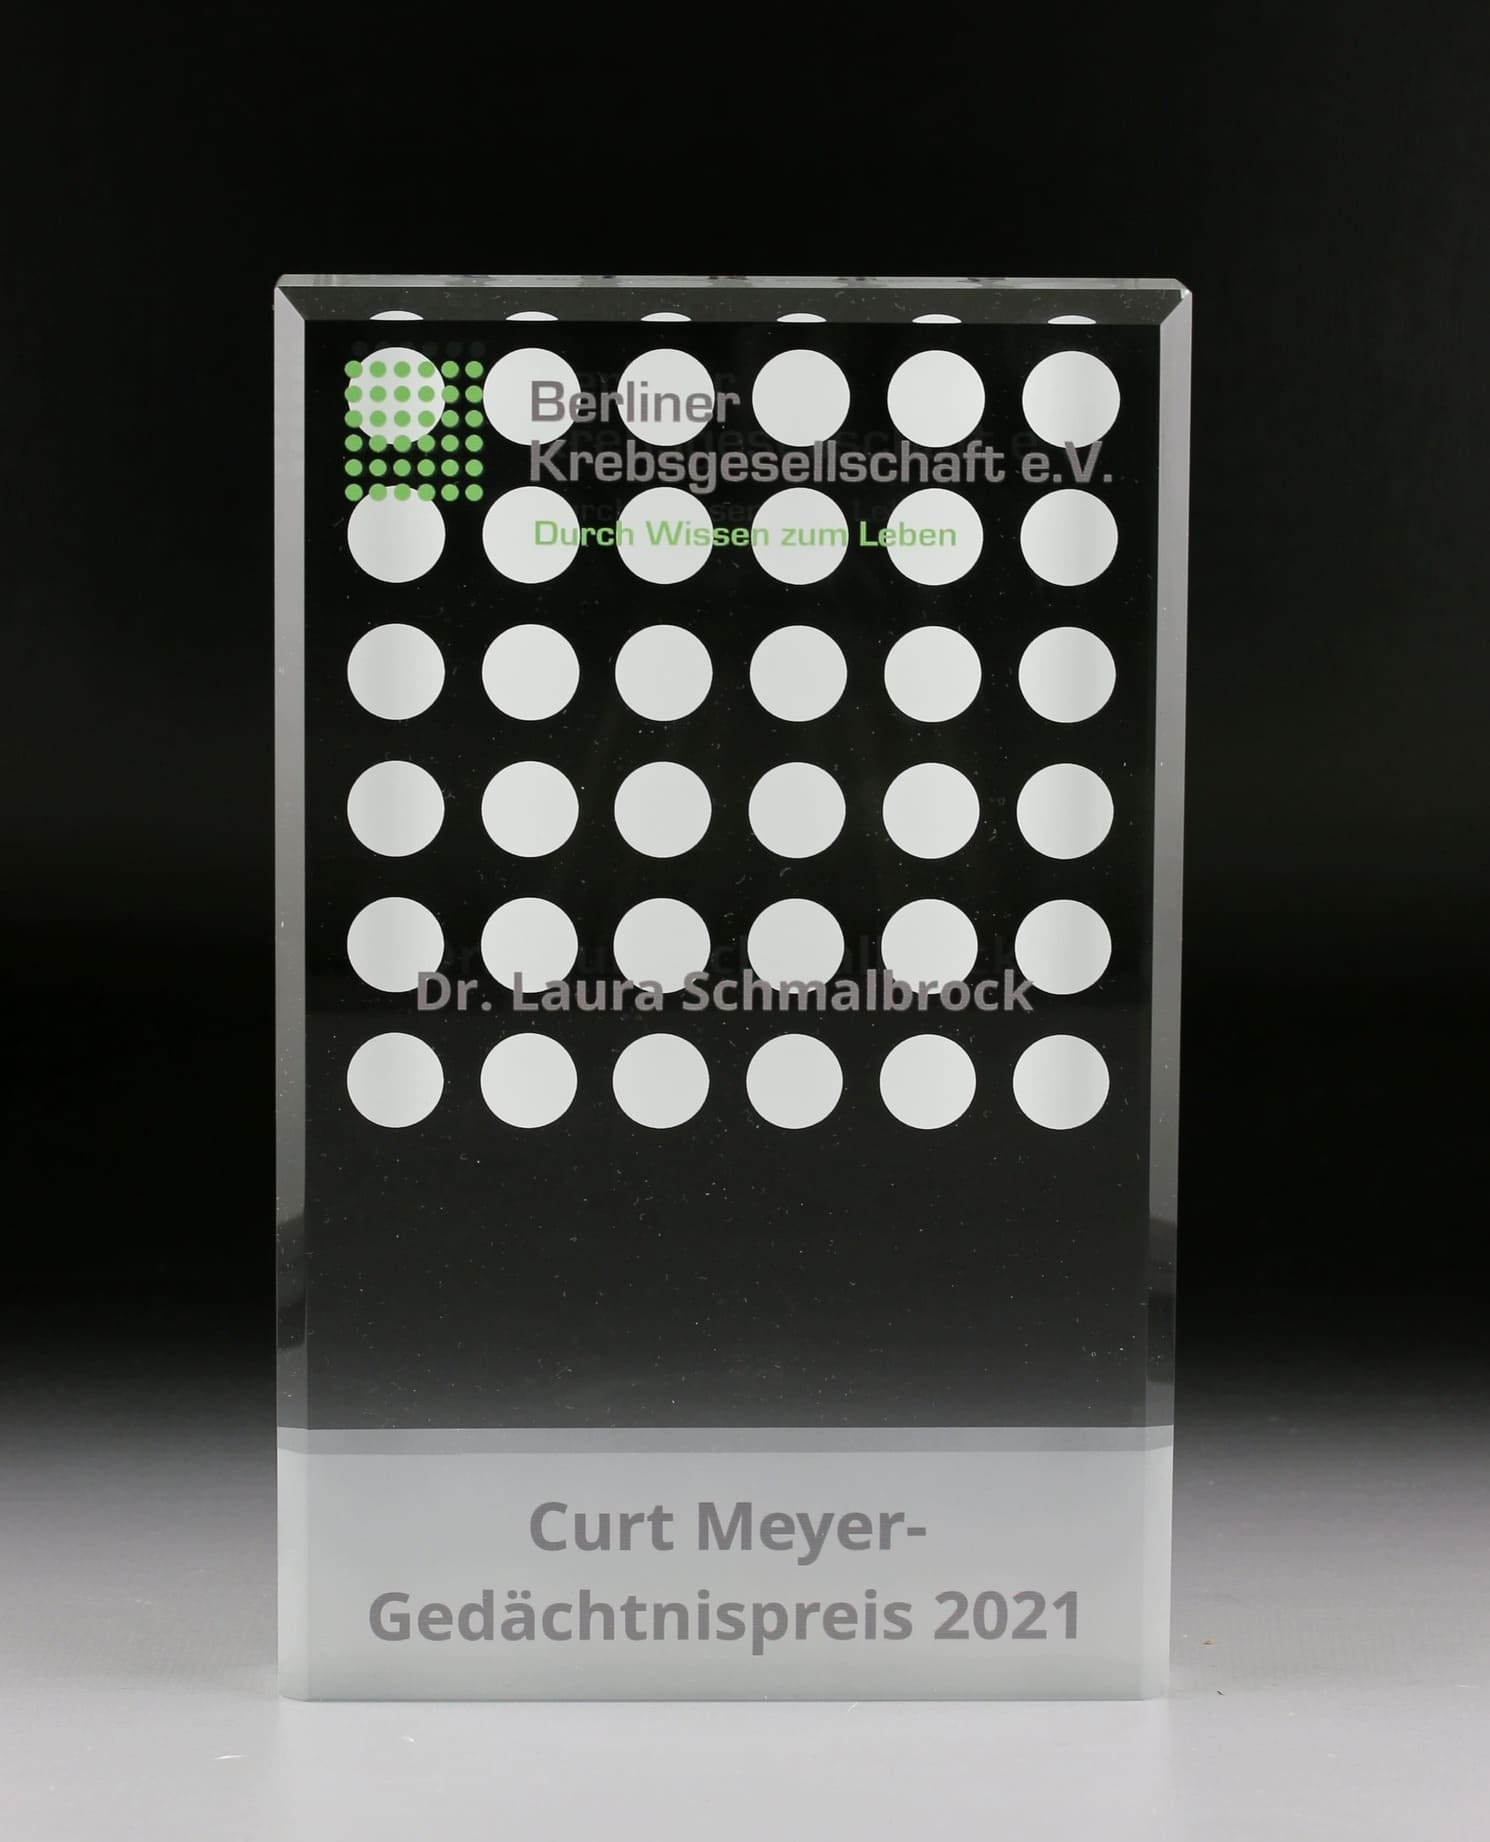 Curt Meyer Gedächtnispreis 2021